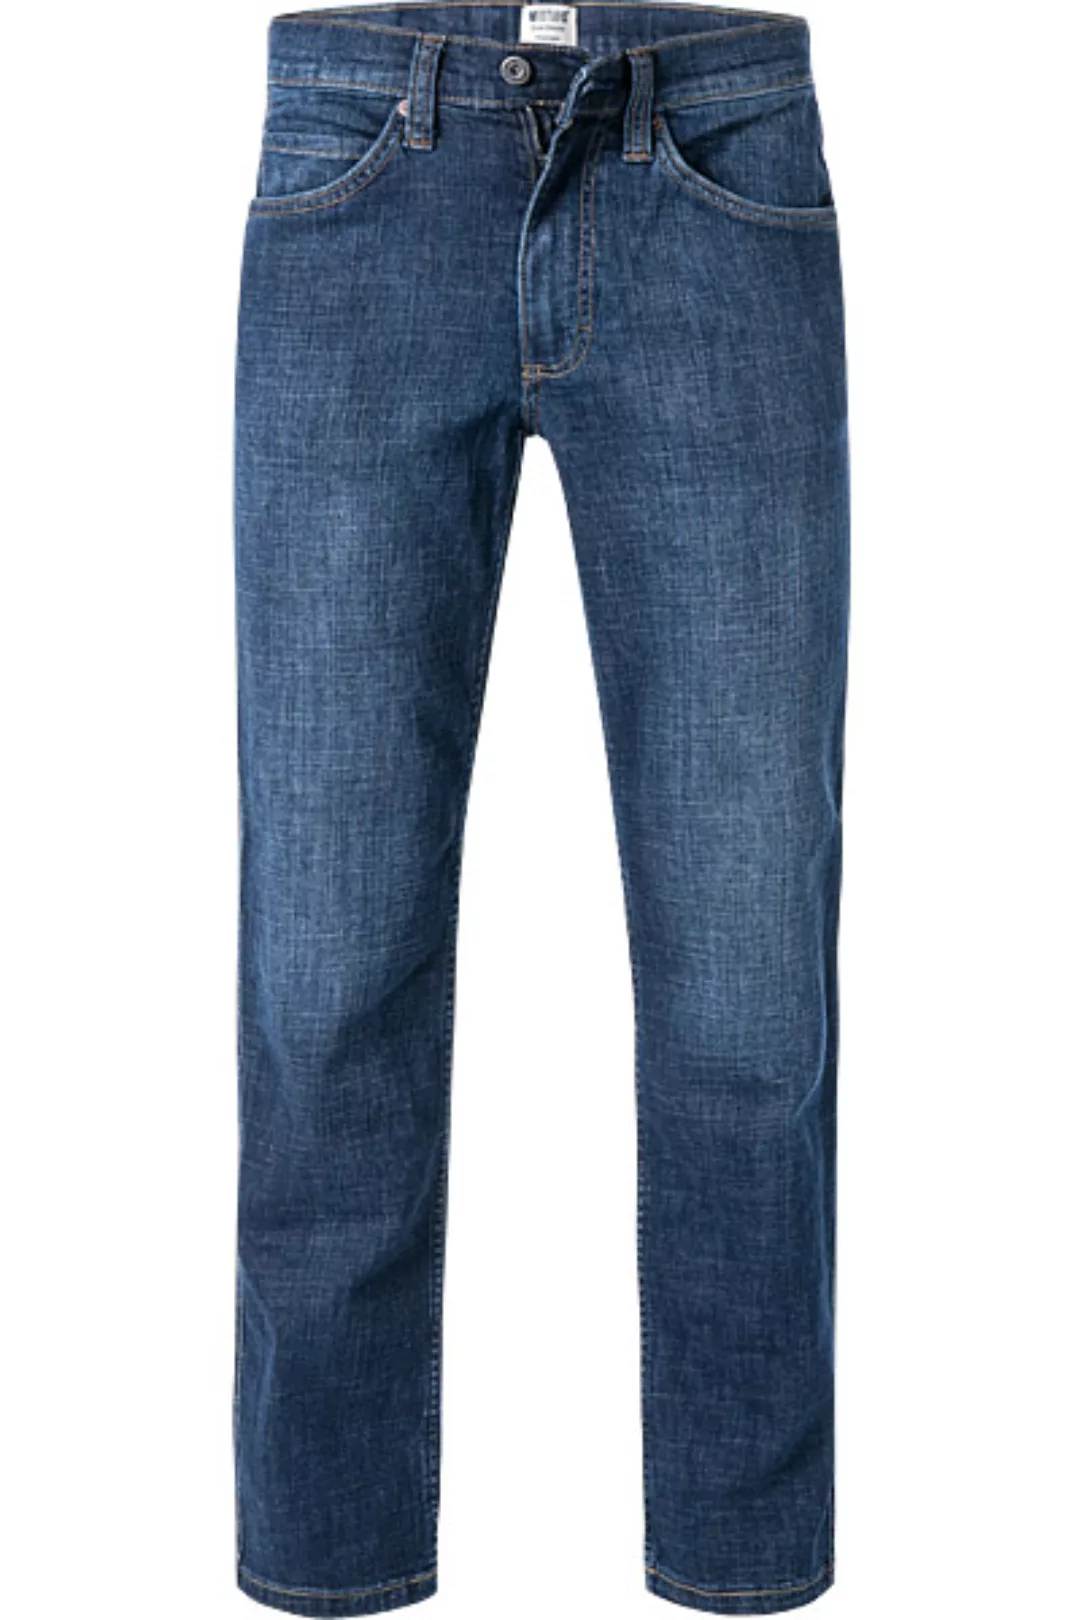 MUSTANG Jeans Tramper 1006743/5000/881 günstig online kaufen